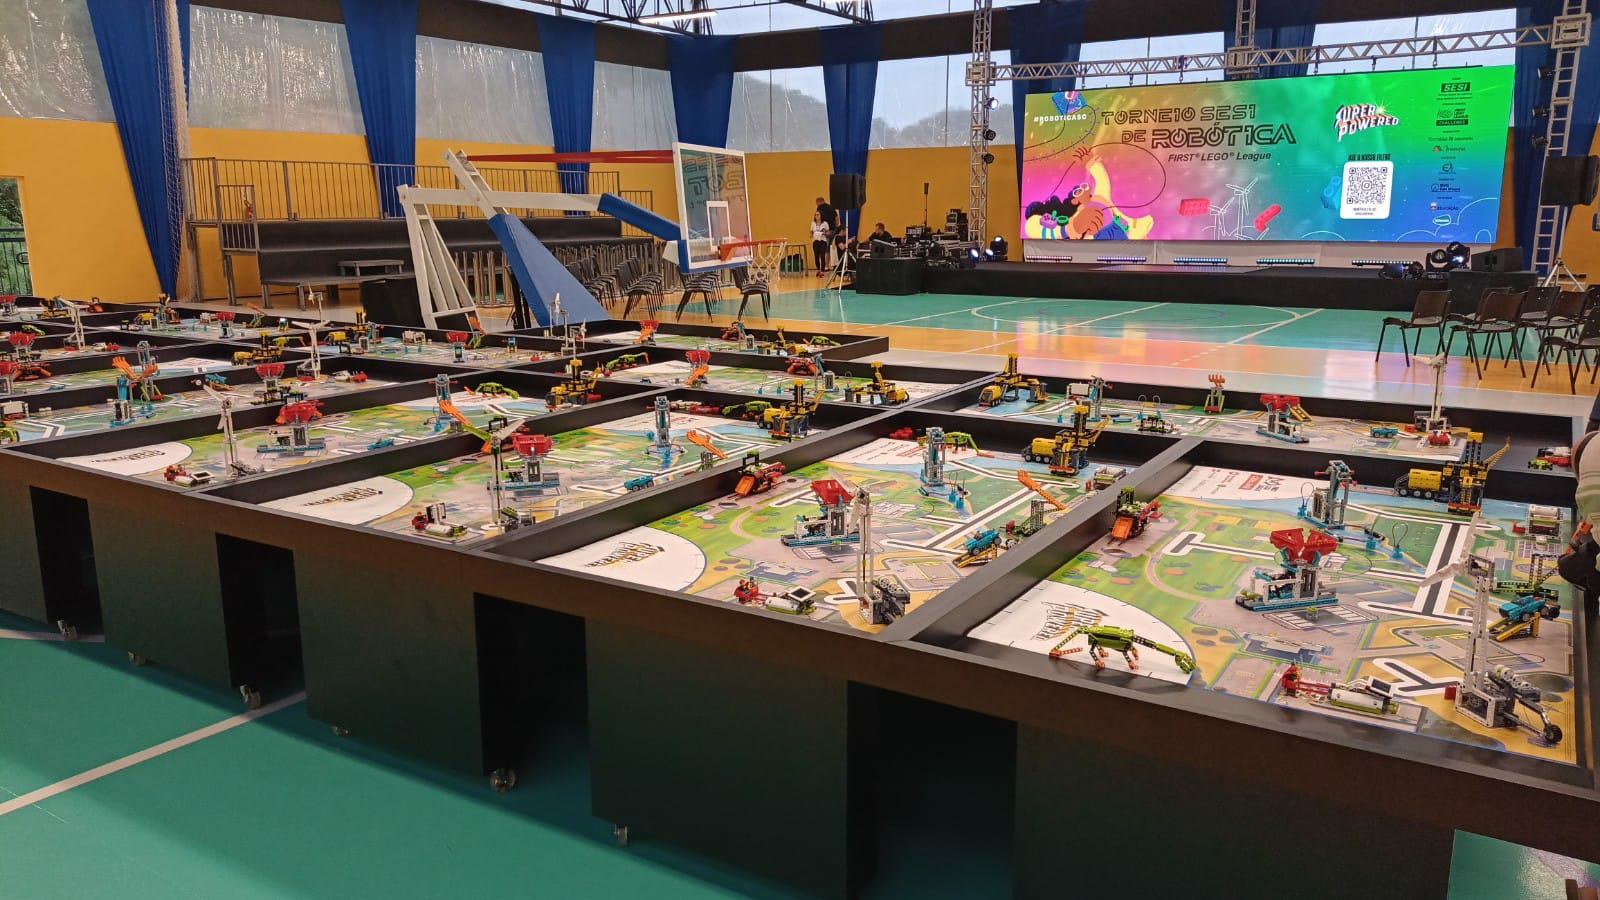 HOJE: SESI realiza em Itajaí um dos maiores torneios de robótica do país